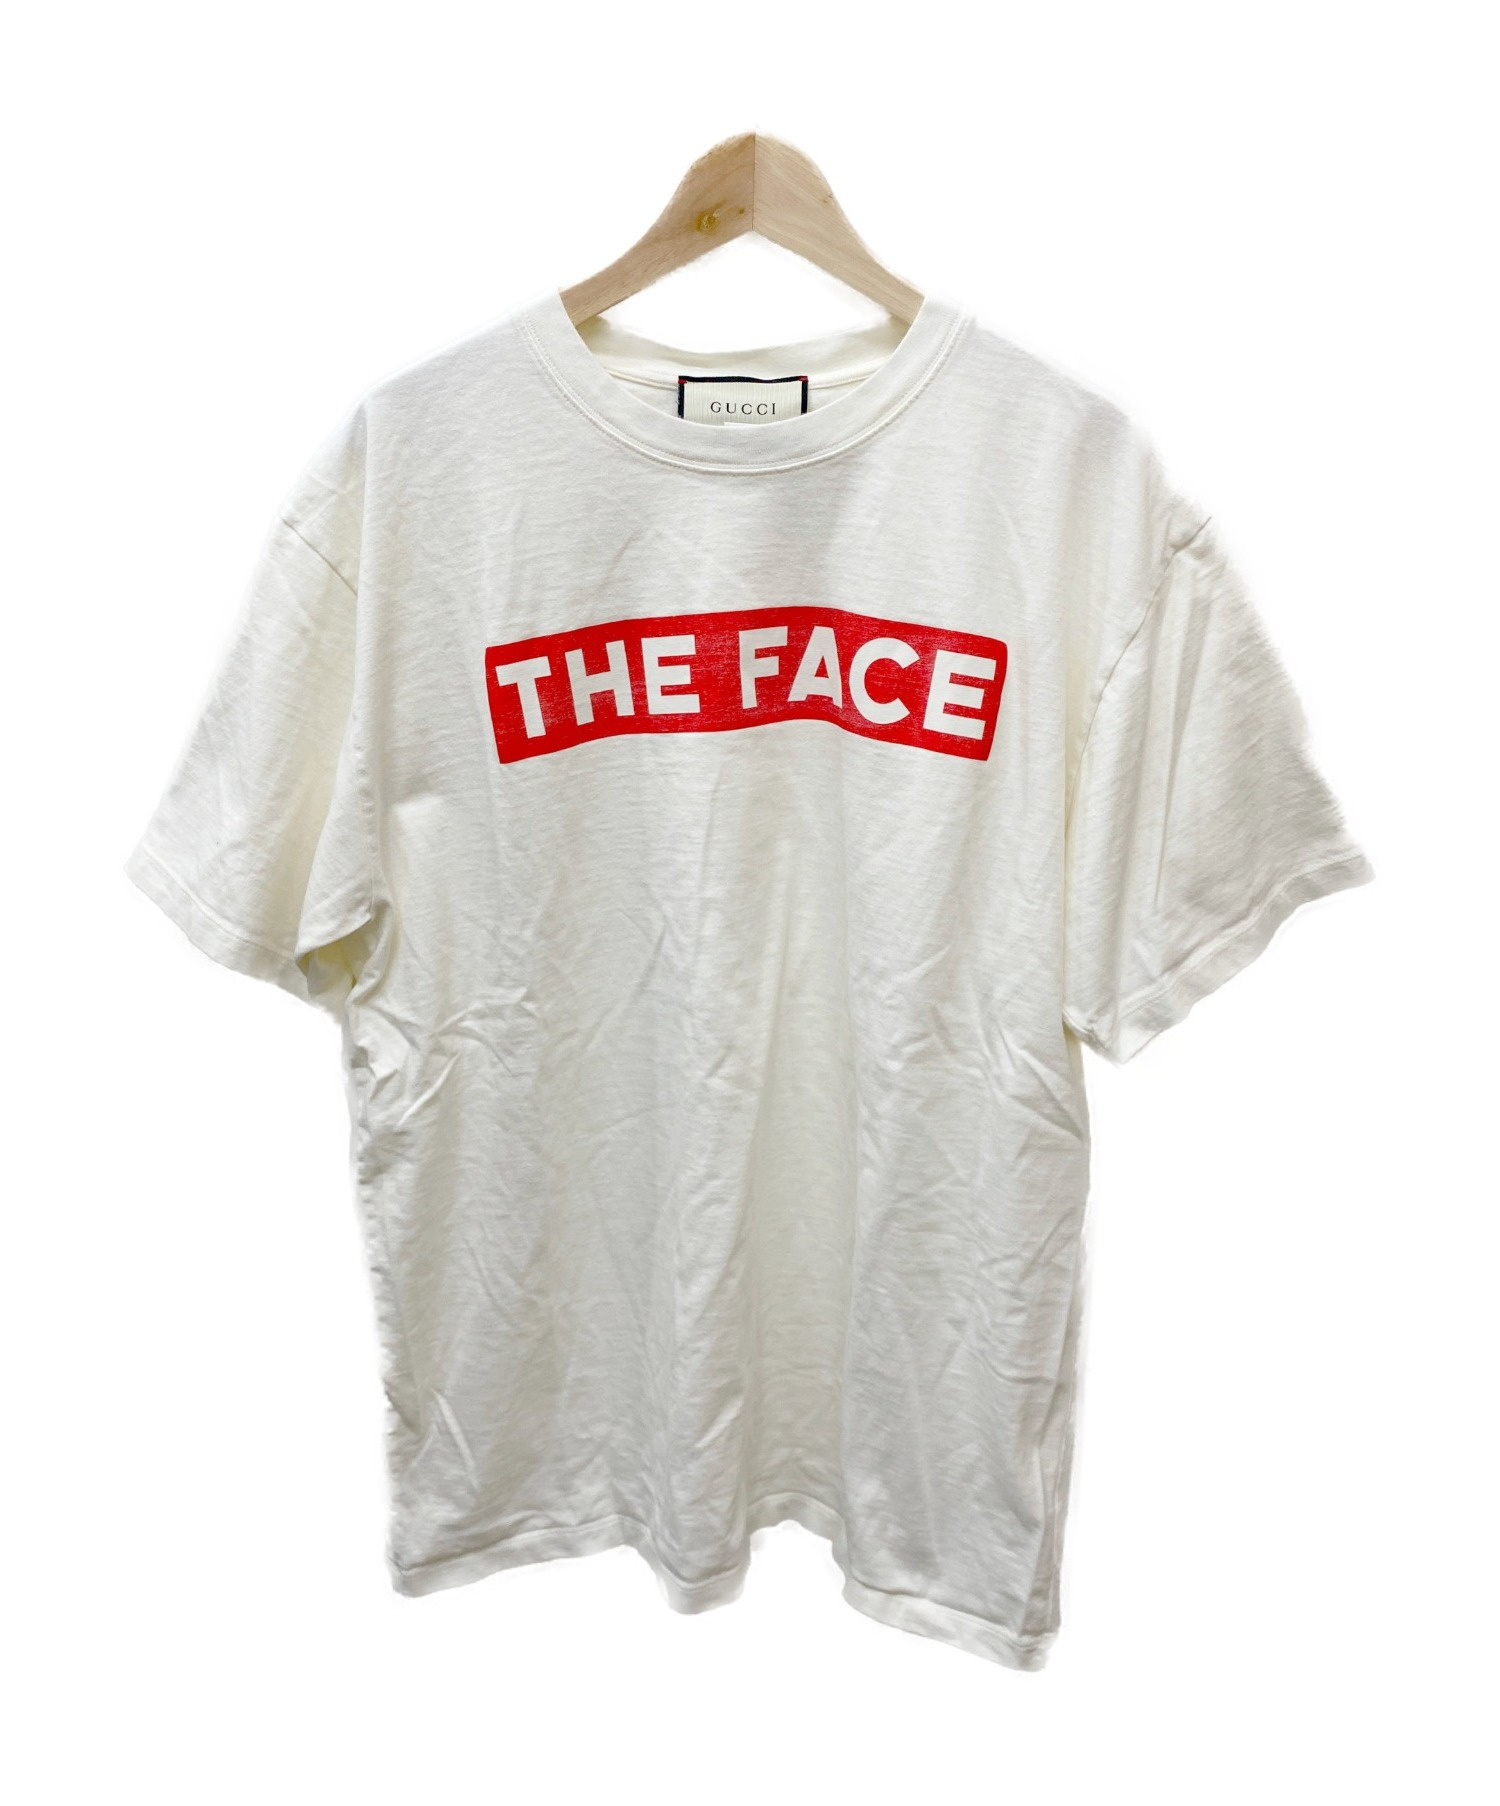 超歓迎された GUCCI グッチ THE FACE メンズTシャツ Sサイズ ilam.org